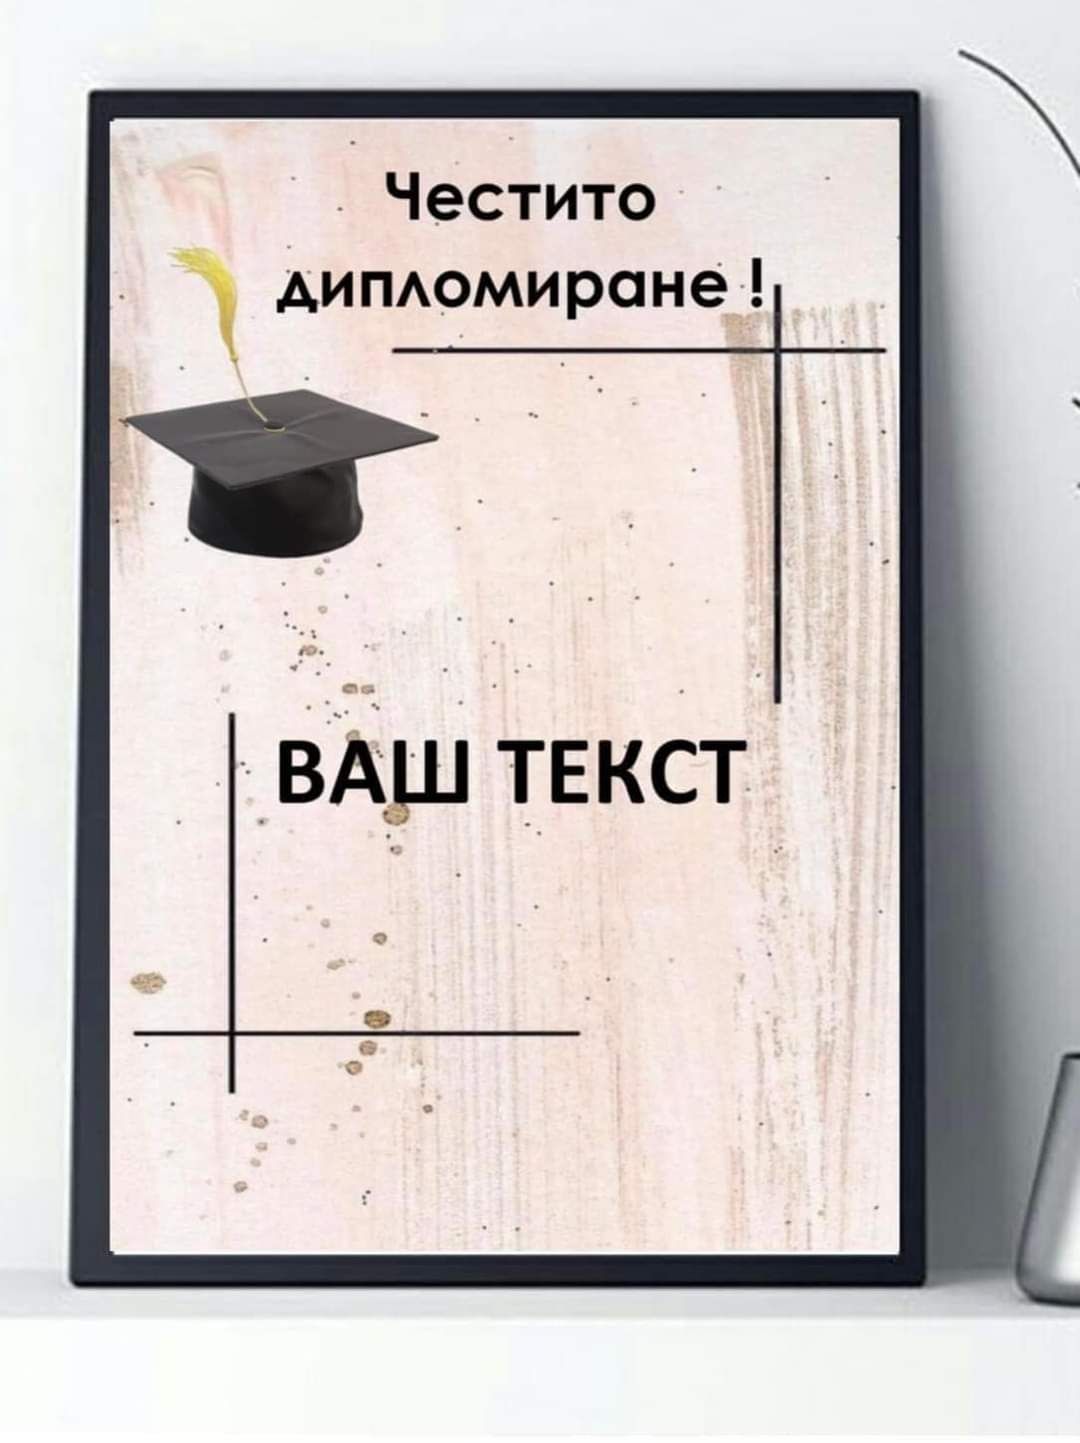 Постер за стена,честито дипломиране